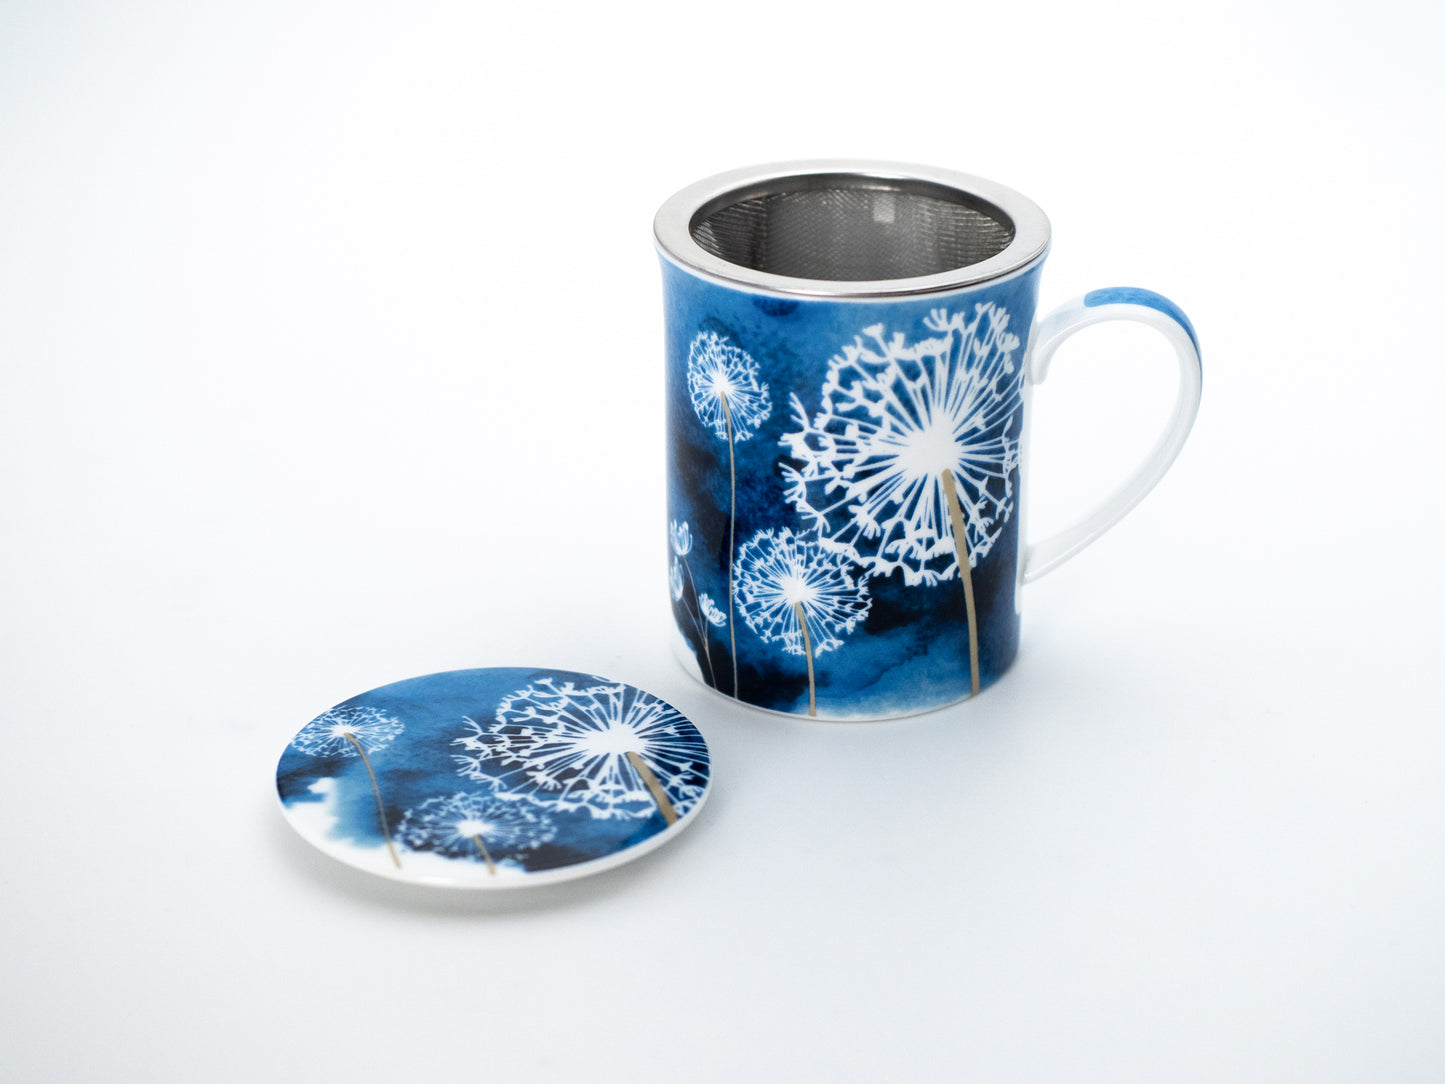 Blue dandelion porcelain infuser mug and stainless steel infuser basket stand next its porcelain lid